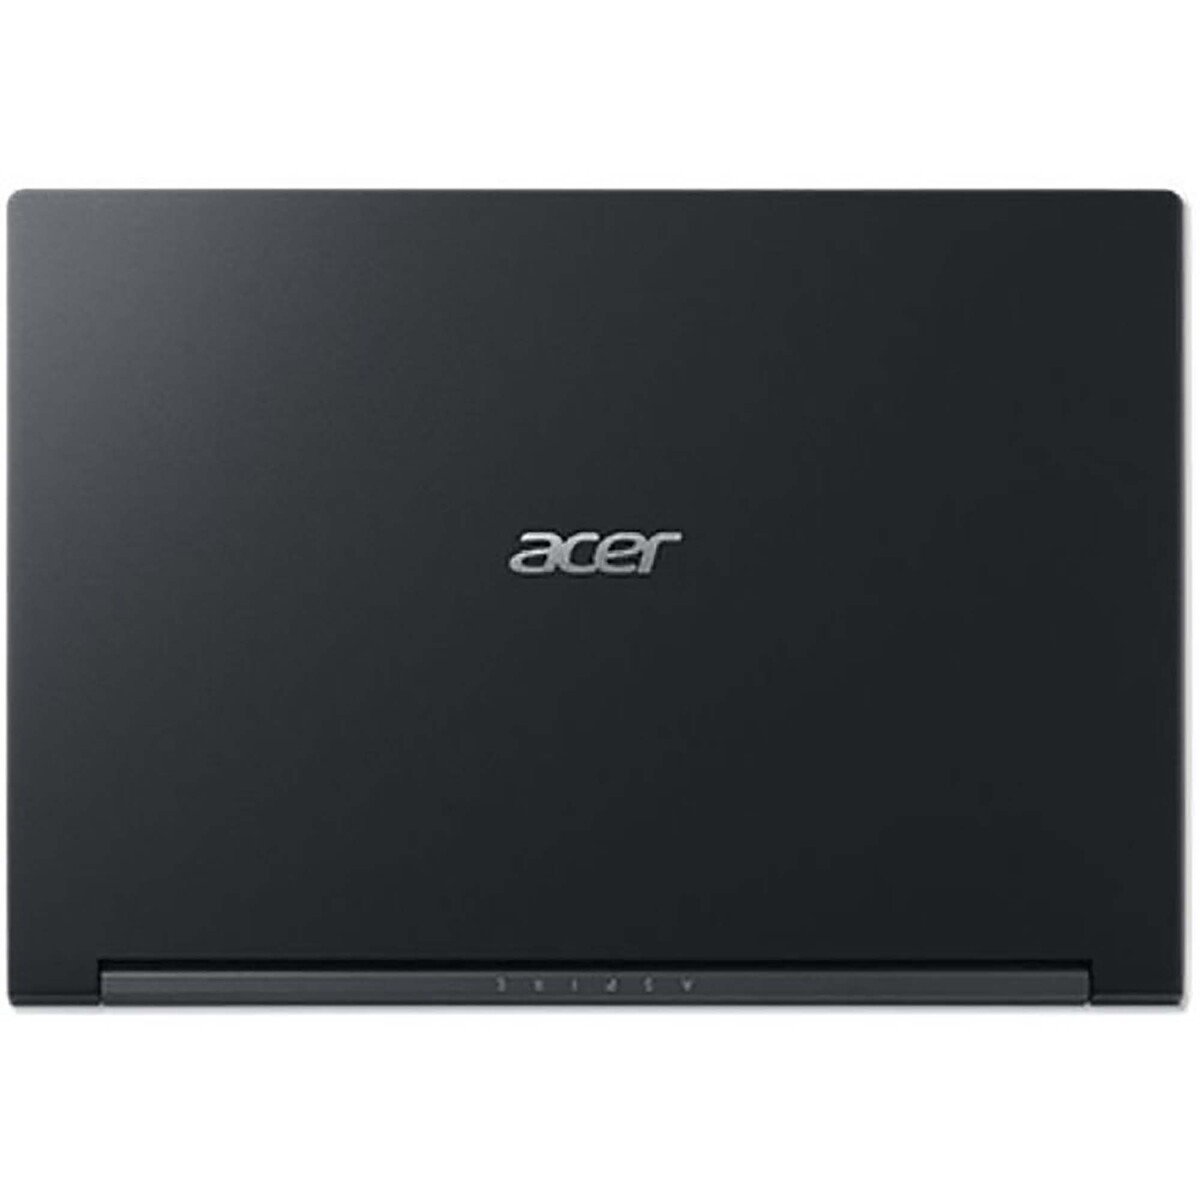 Acer Aspire 7 (A715-75G-5576),Intel Core i5 -10300H,8GB RAM,512GB SSD, 15.6"FHD,Windows 11,Black,English-Arabic Keyboard